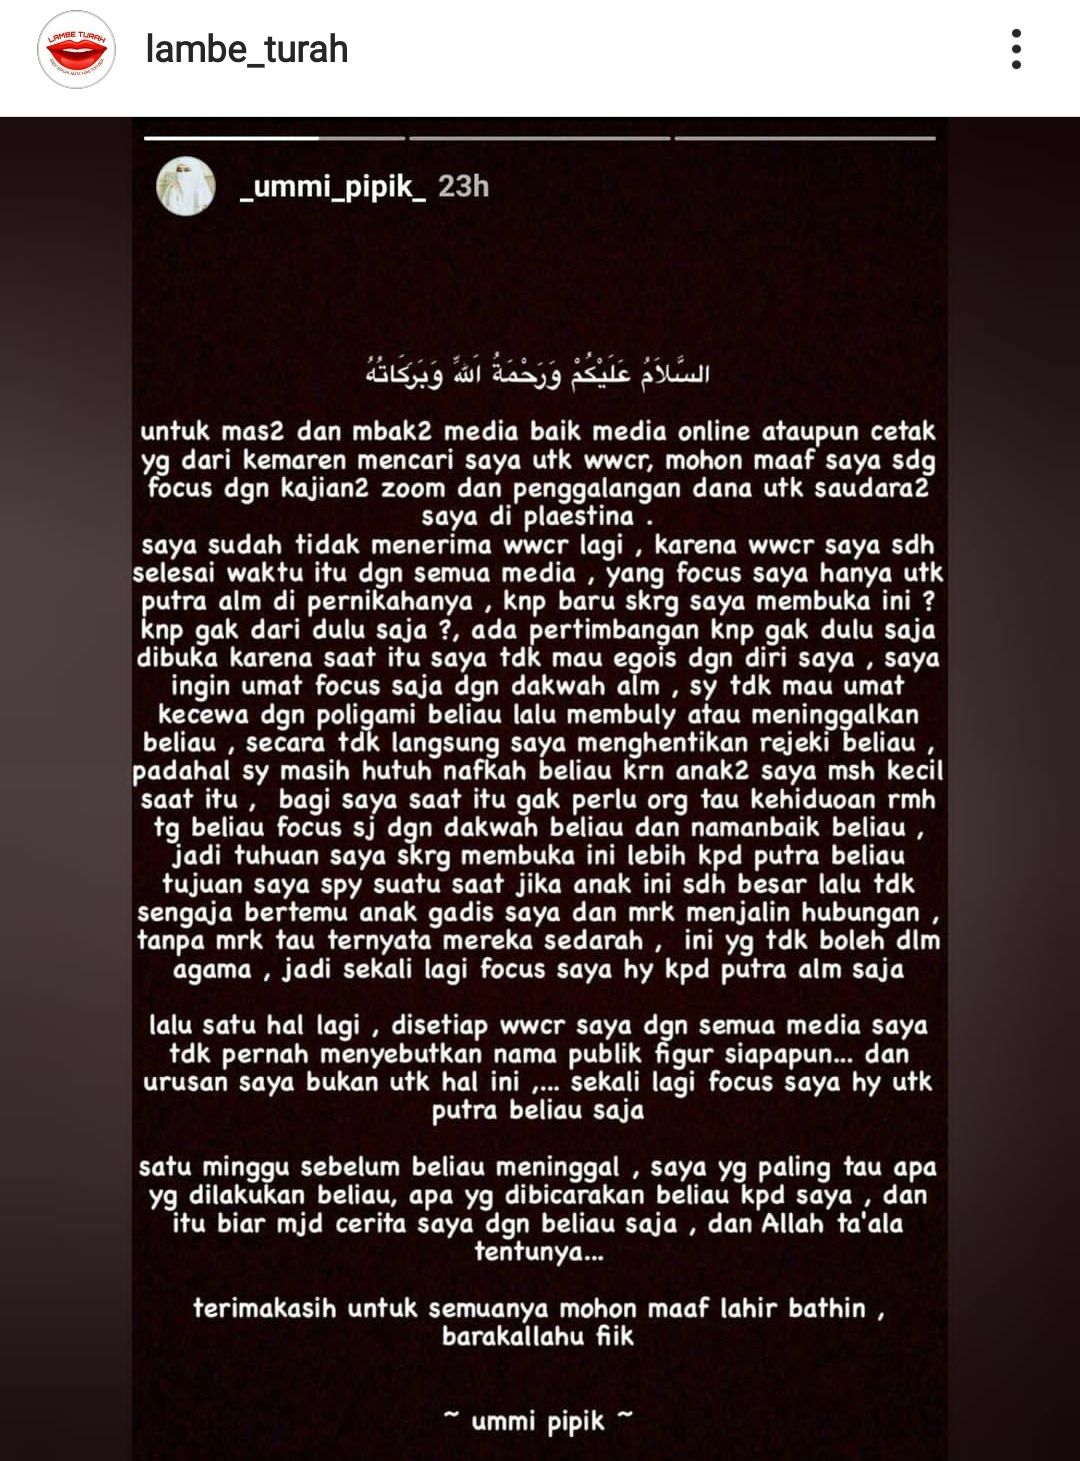 Insta story Umi Pipik yang dibagikan instagram @lambe_turah.